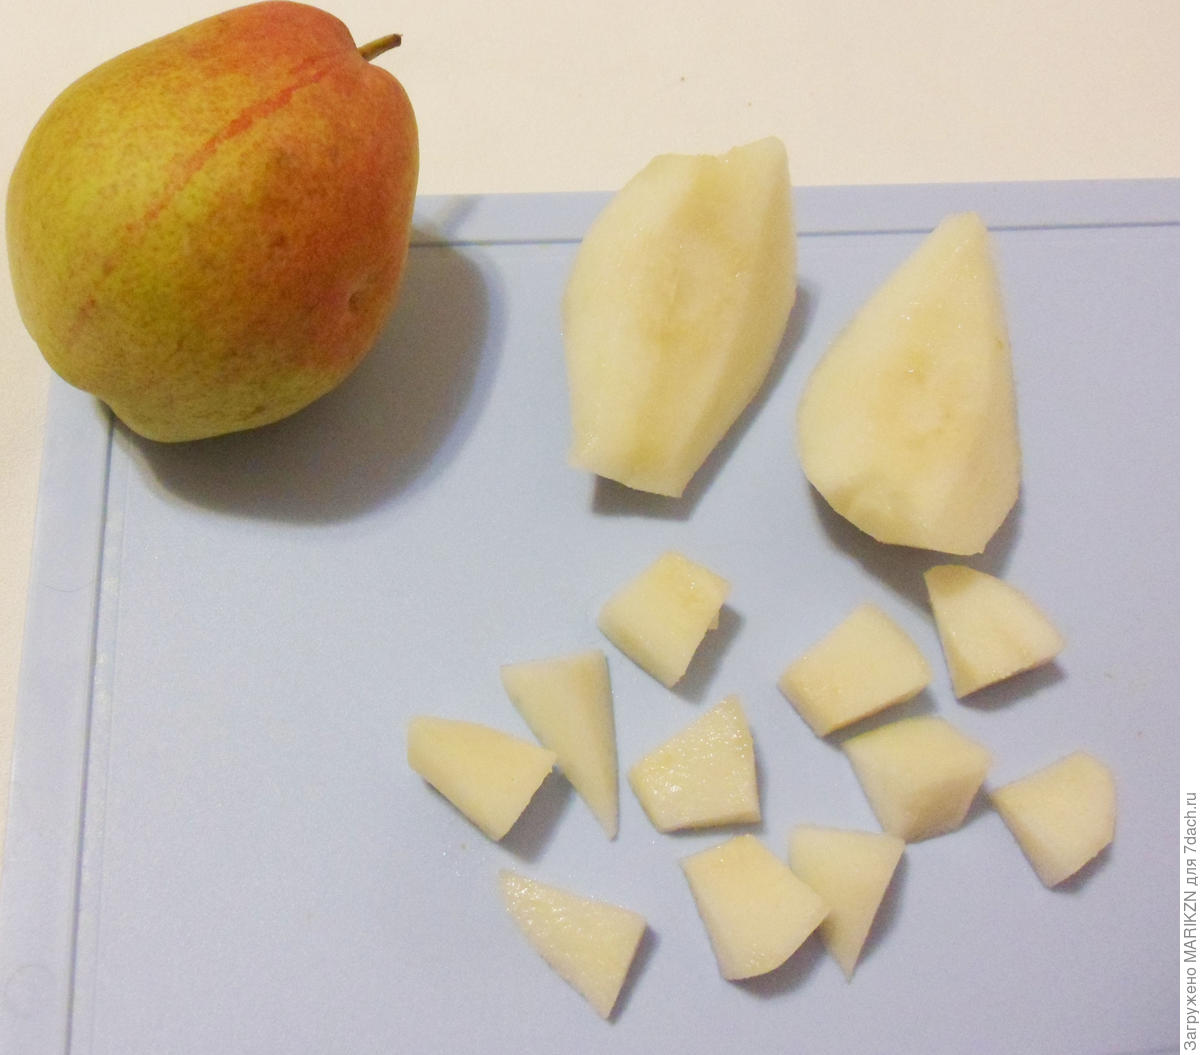 Варенье «Янтарное» из тыквы с яблоками, грушами, орехами и лимоном